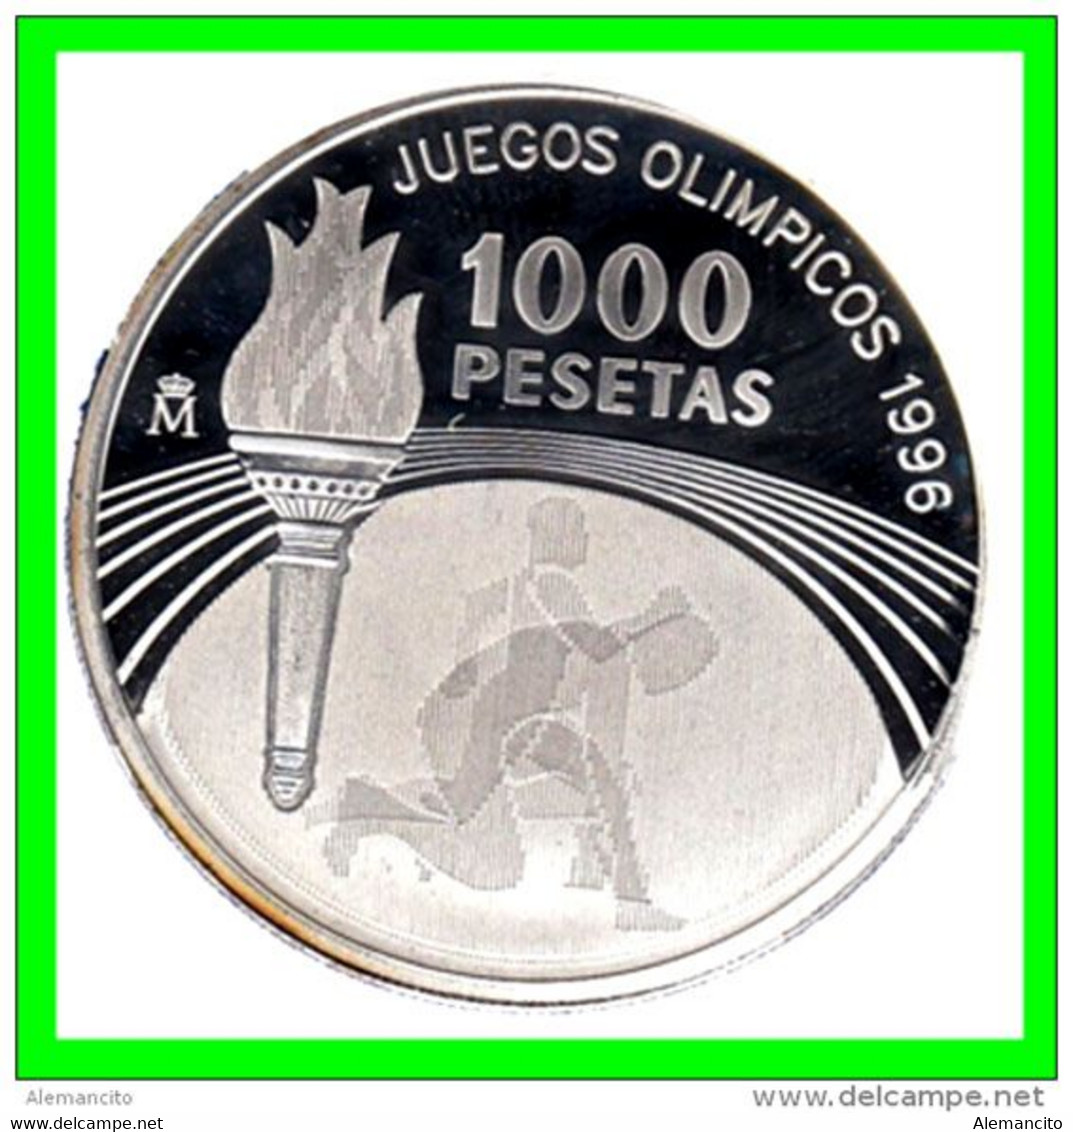 ESPAÑA MONEDA DE 1.000 PESETAS JUEGOS OLIMPICOS 1996. PLATA CALIDAD  PROOF. AÑO 1996 MONEDA PLATA - 1 000 Pesetas